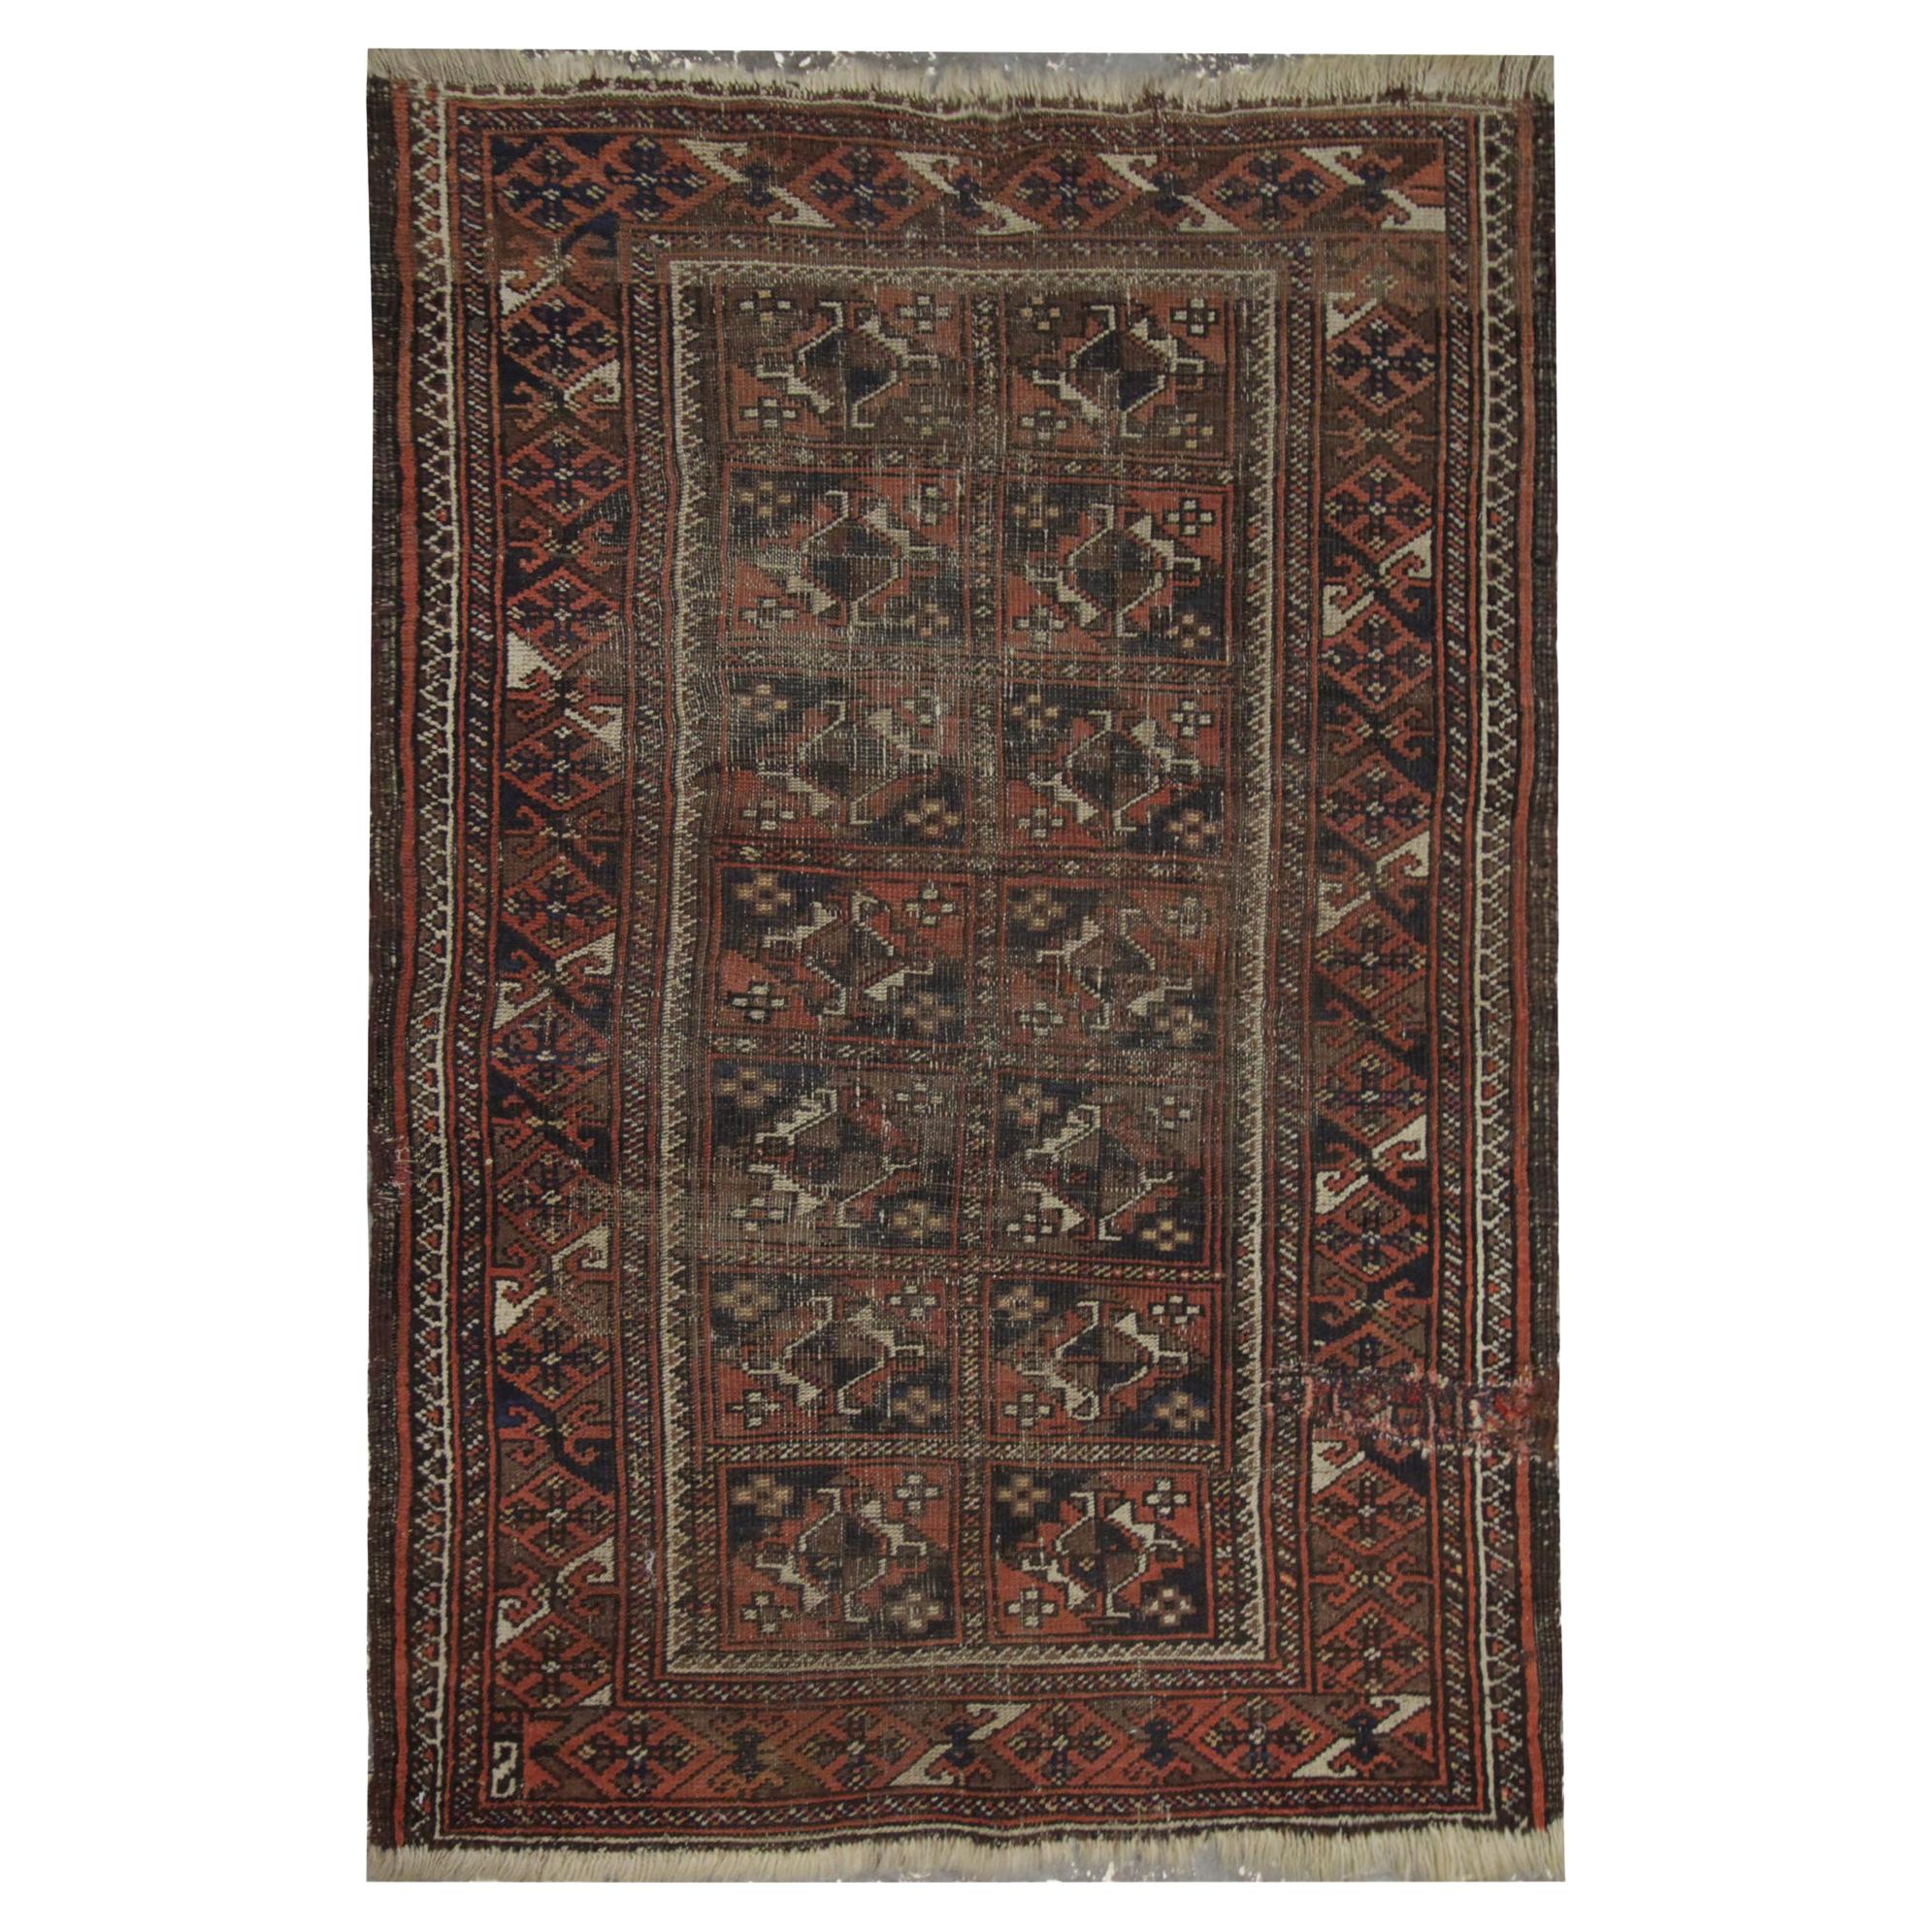 Antiker handgewebter roter Teppich aus Wolle, Orientteppich